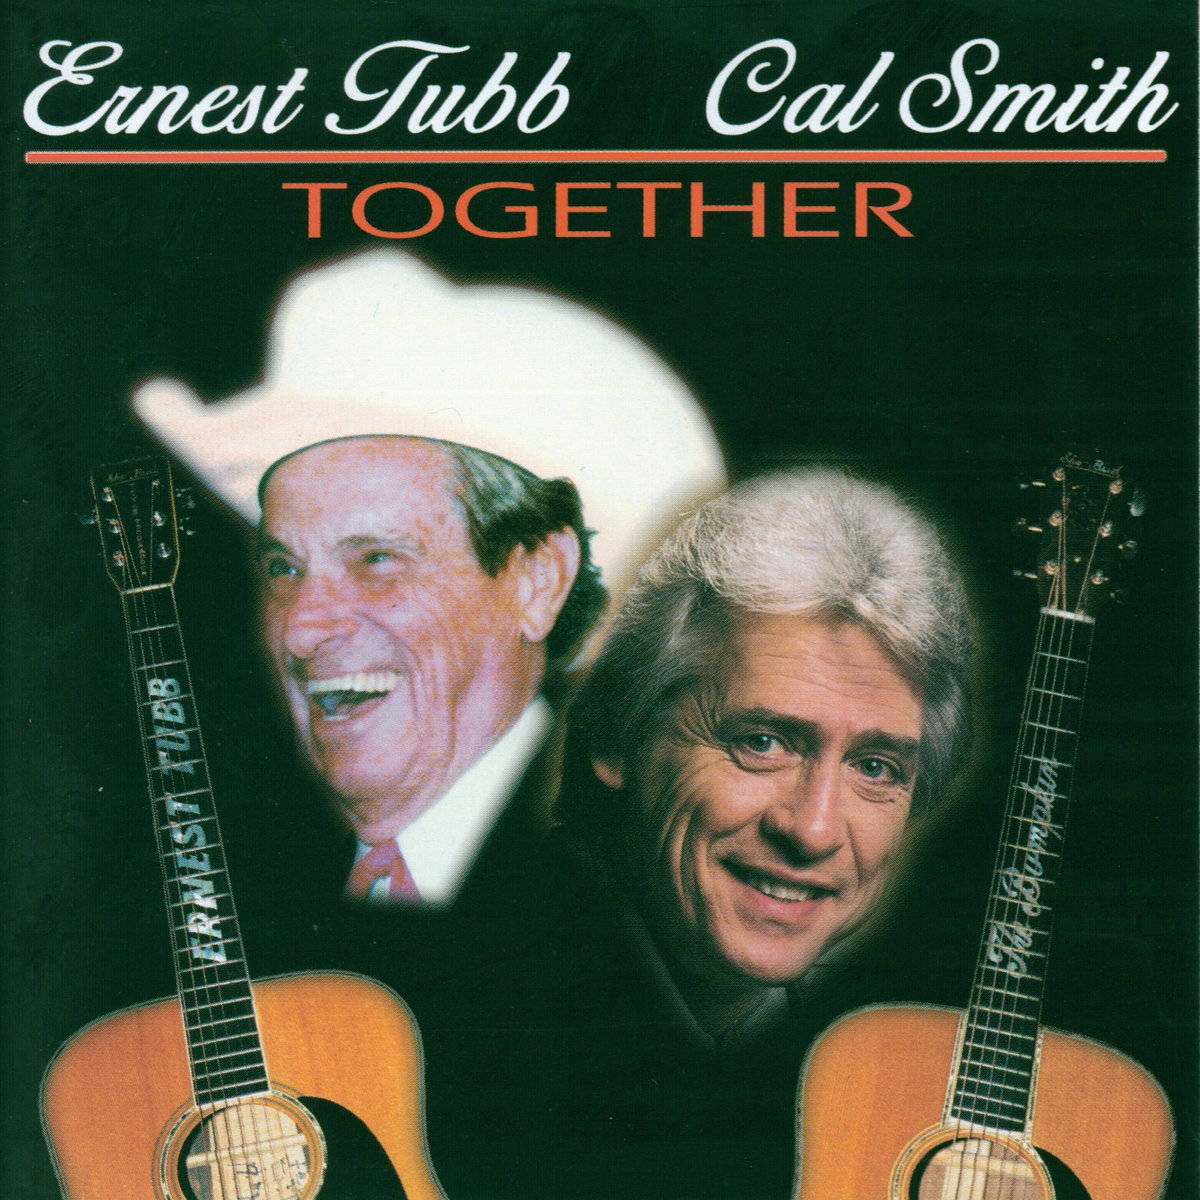 Ernesttubb Cal Smith Album - Ernest Tubb Cal Smith Album Wallpaper